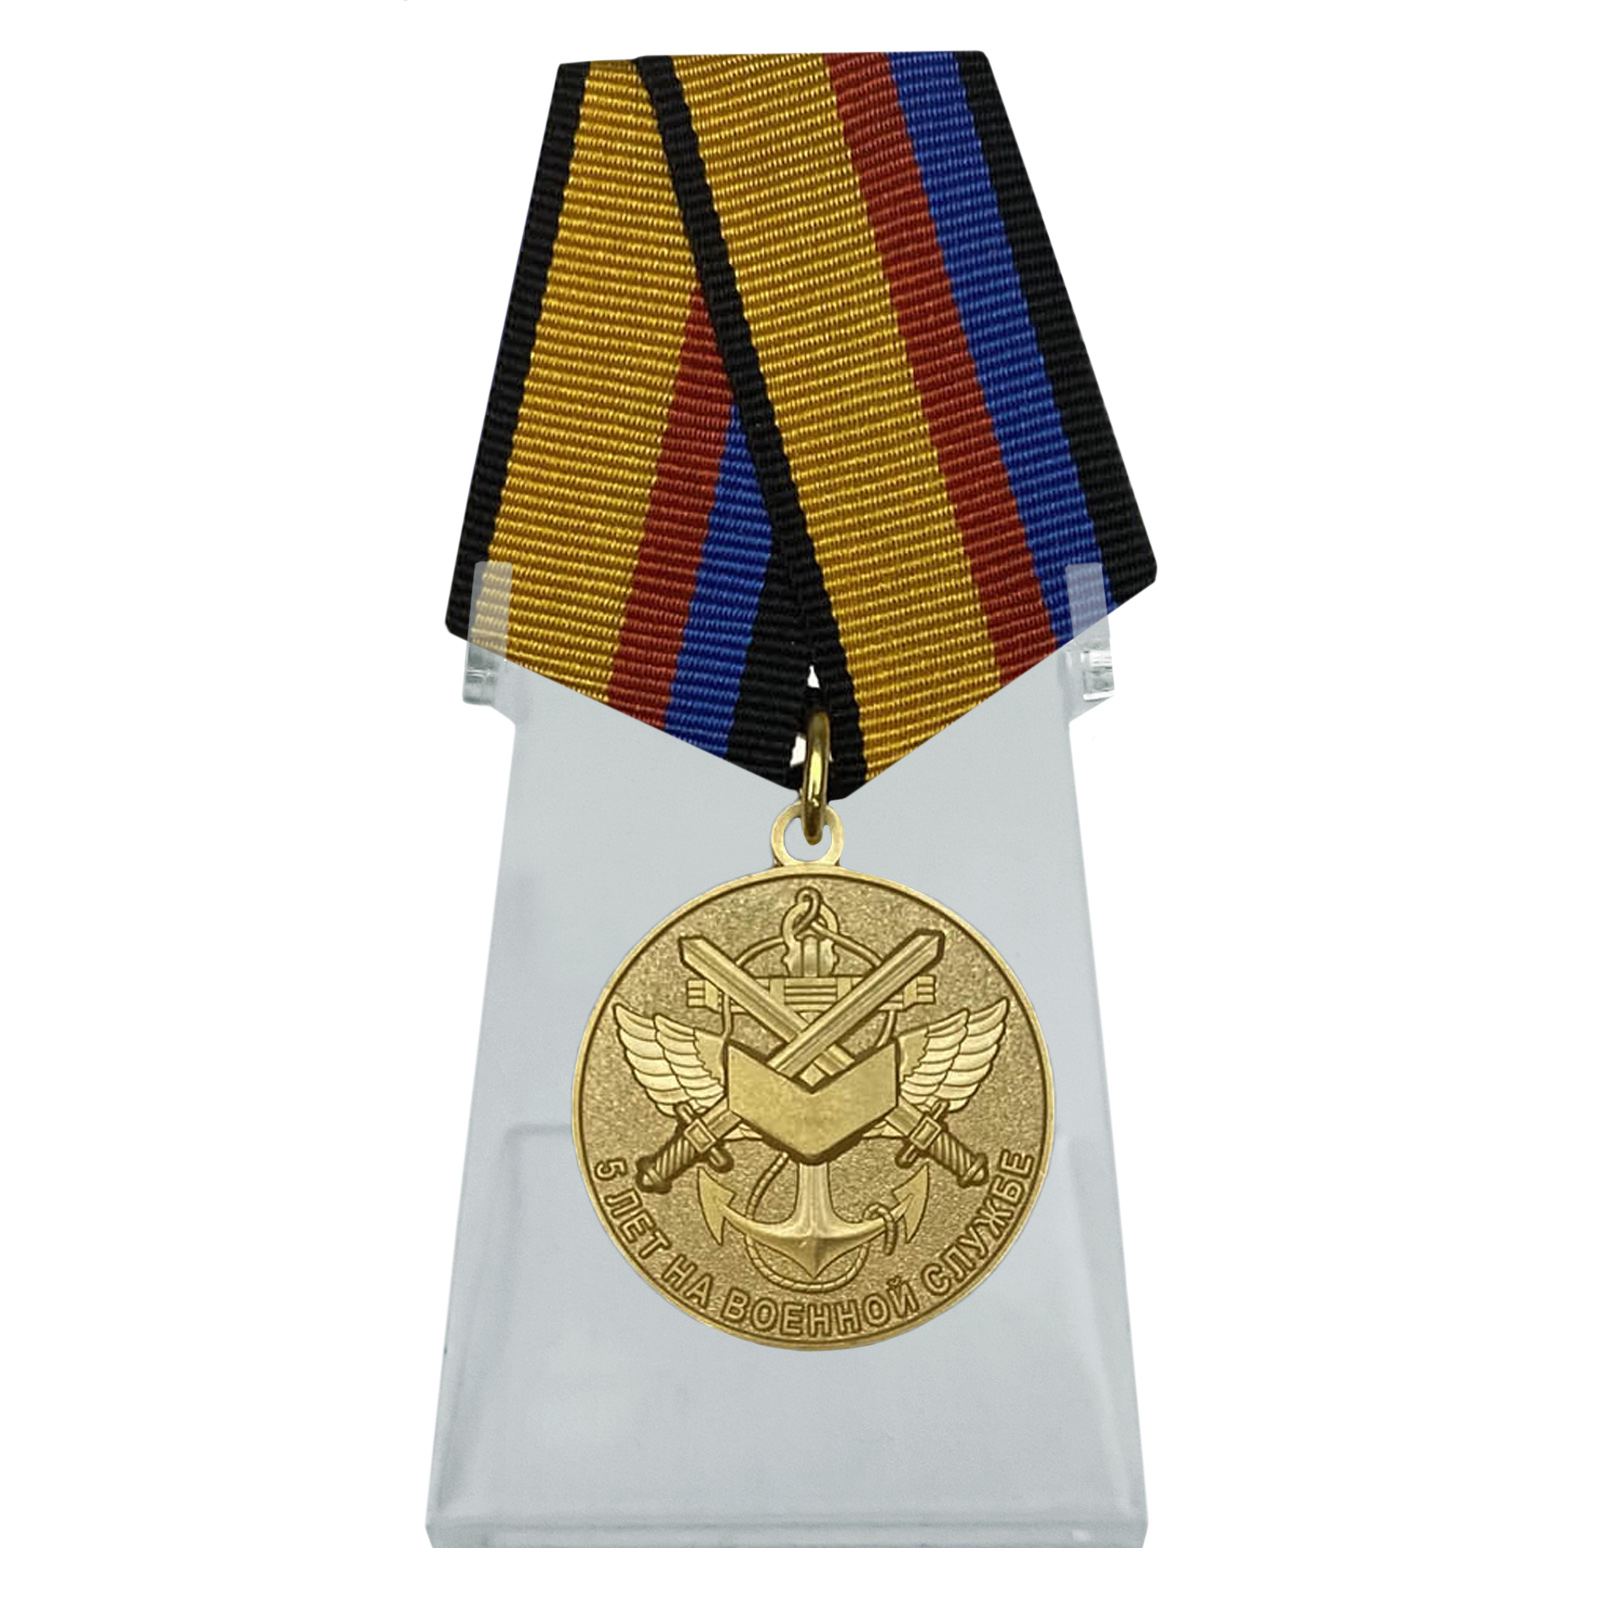 Медаль пятерка. Медаль 5 лет на военной службе. Медаль за 5 лет службы. Медали для военнослужащих контрактной службы.